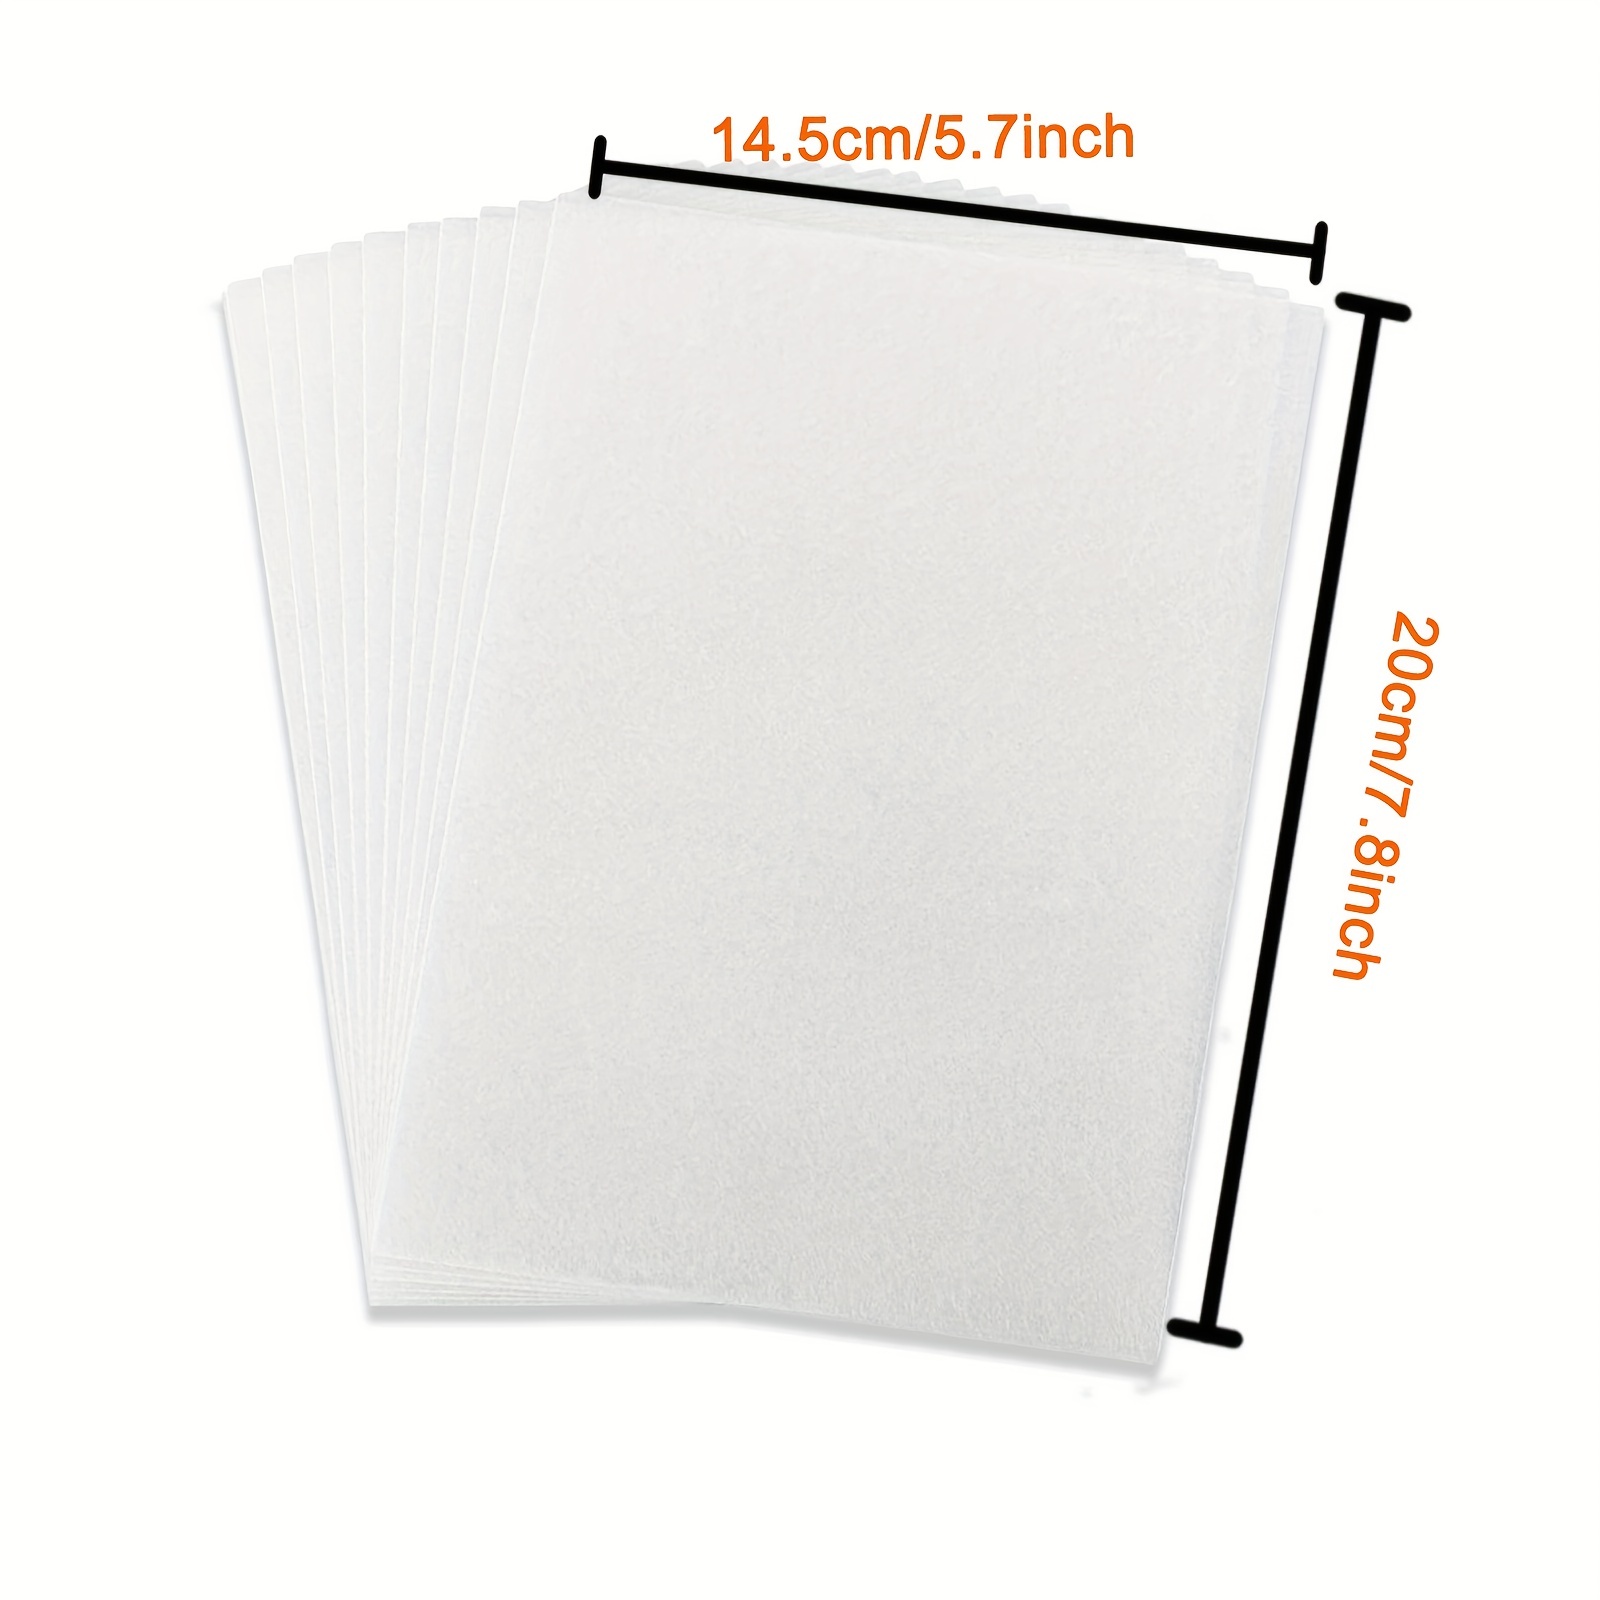 Shrink Plastic Sheet Diy Set Including Heat Shrink Paper Diy - Temu